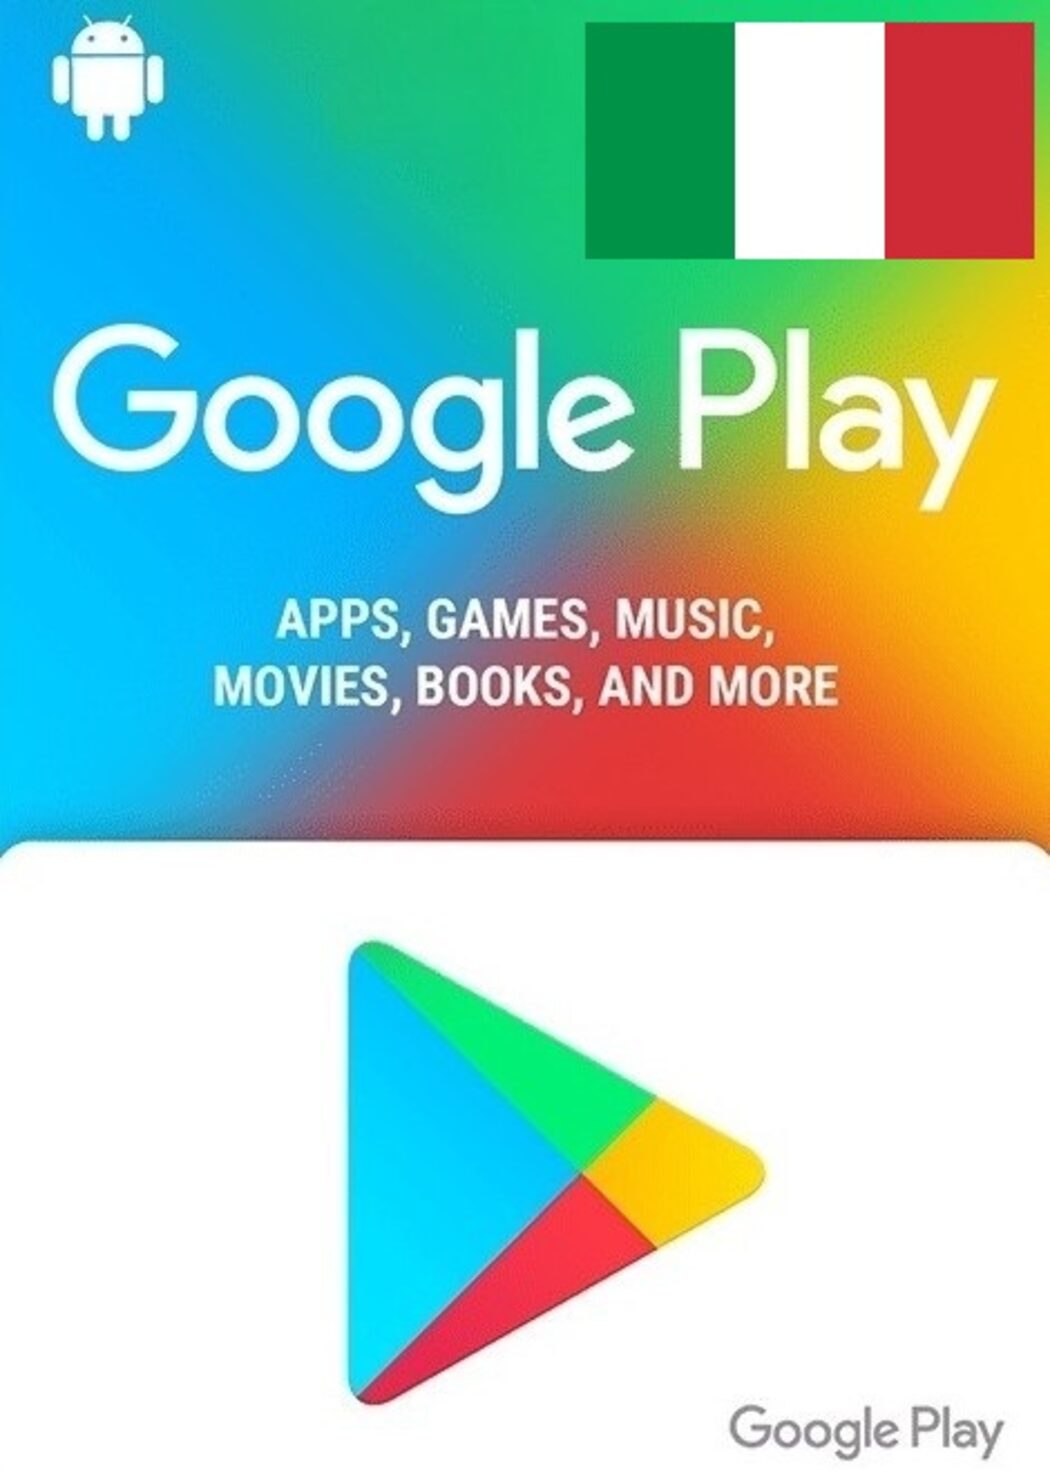 Come riscattare una carta regalo Google Play